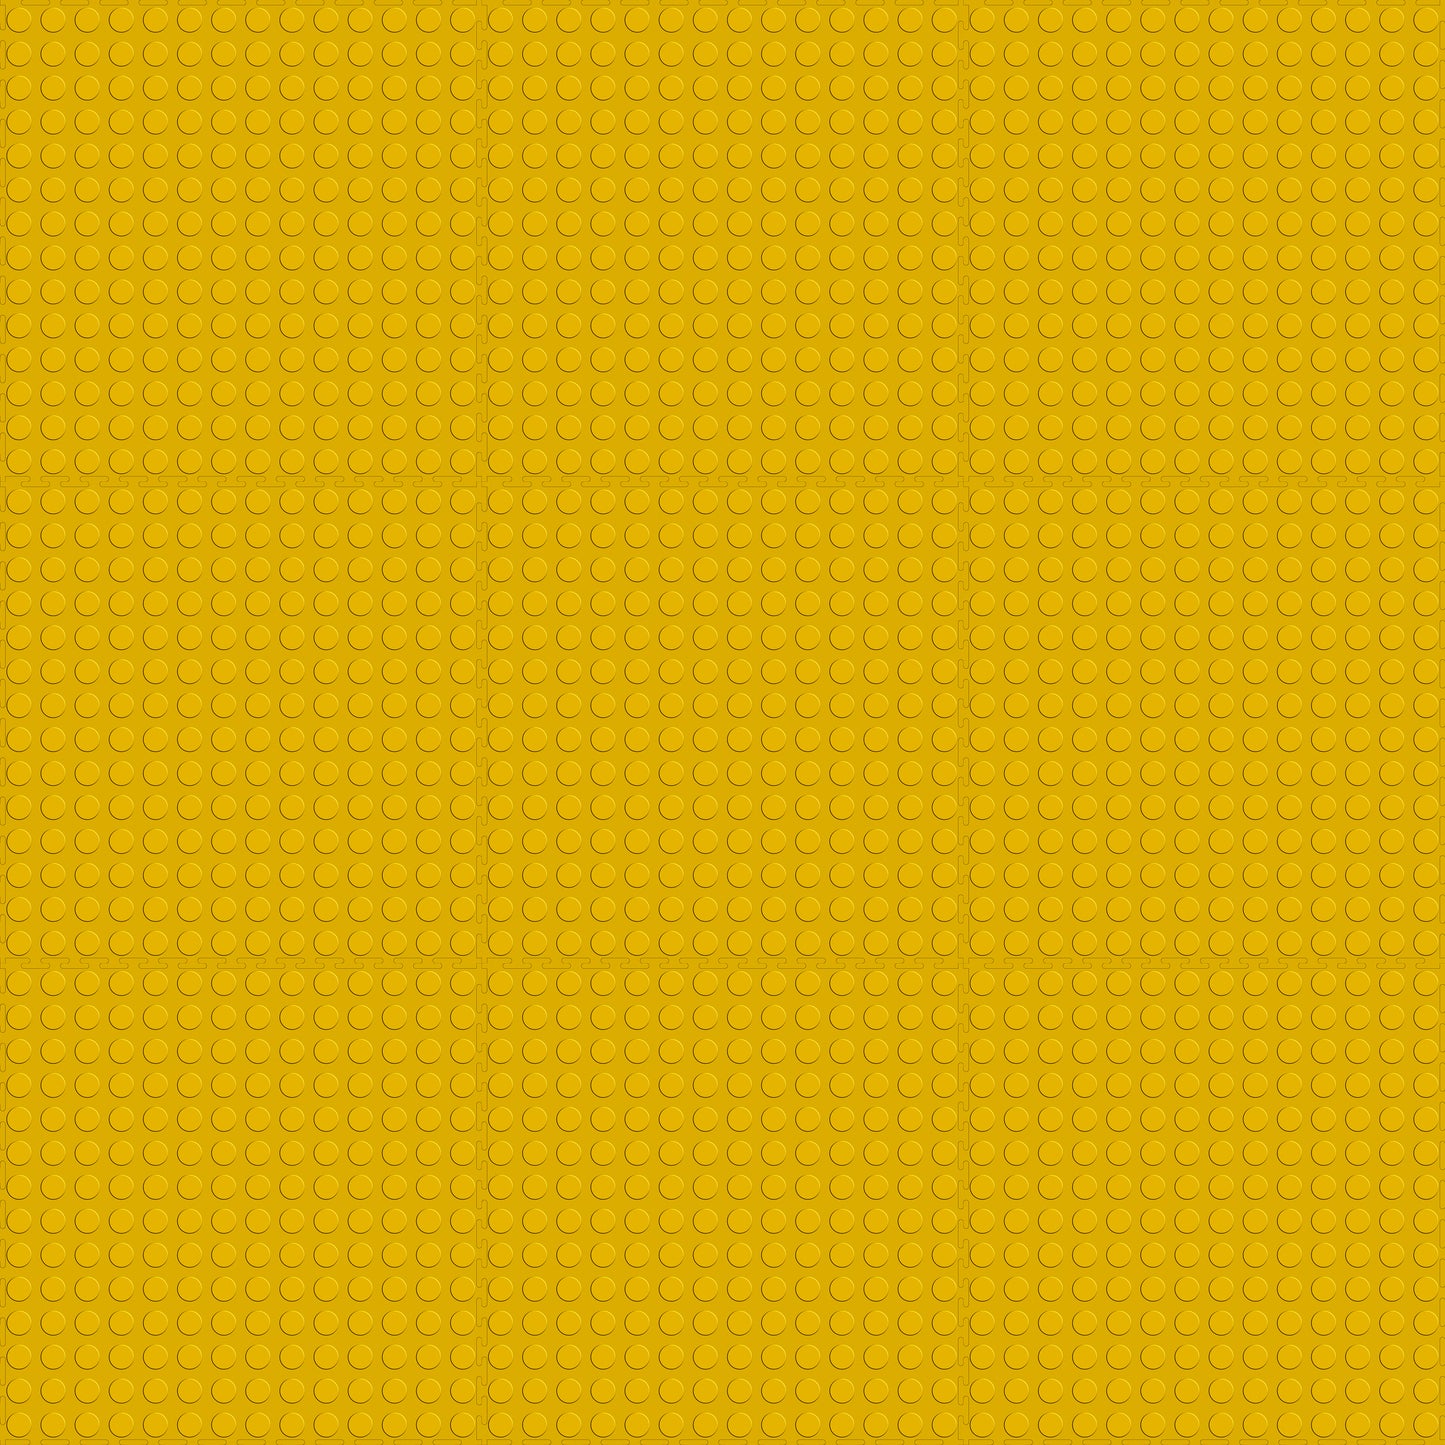 Yellow Coin Tile Case